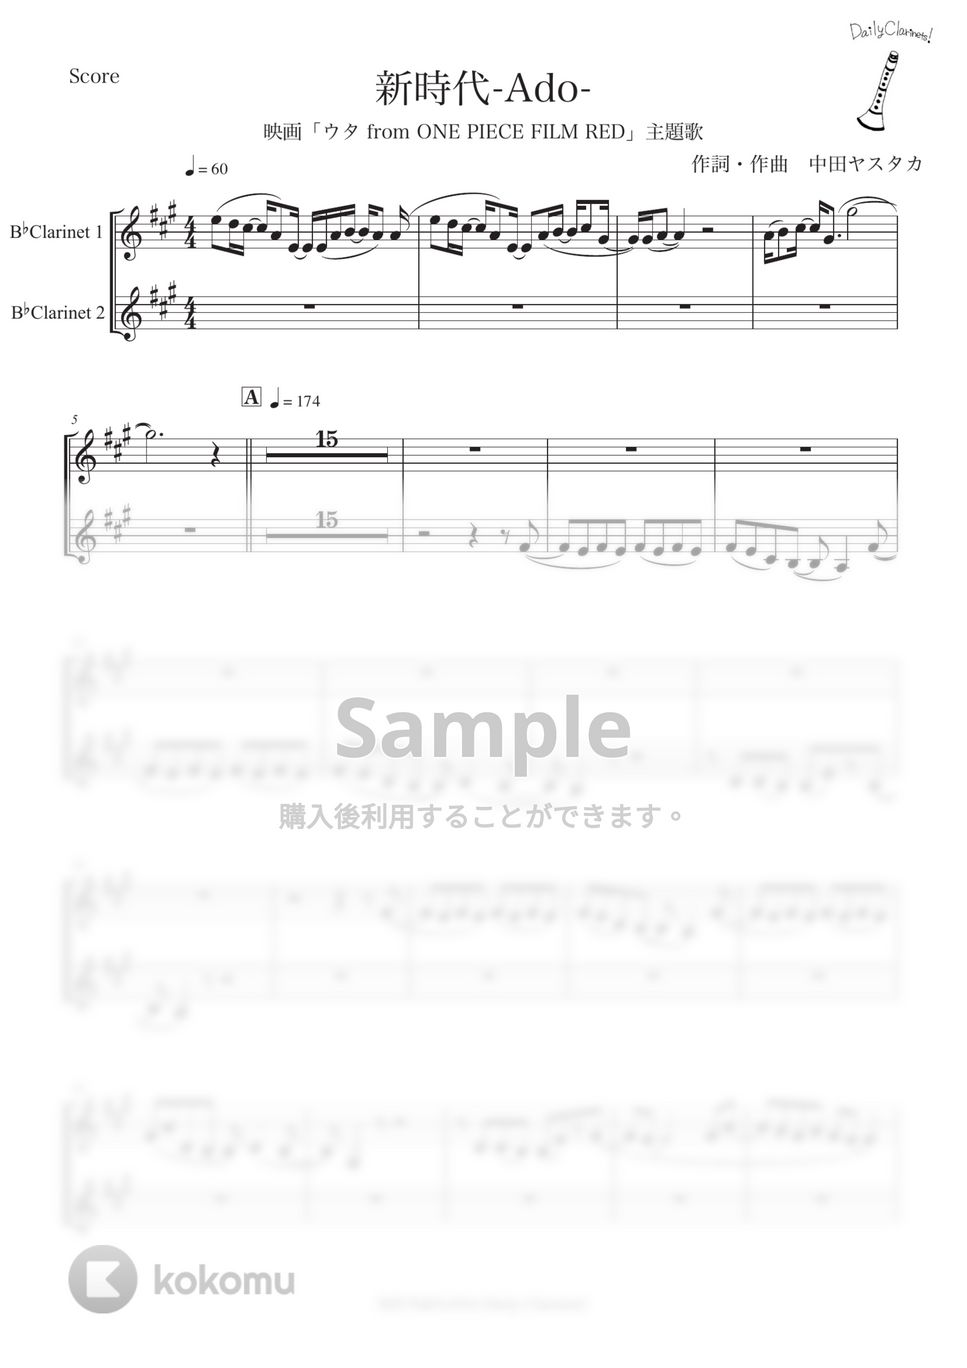 ワンピース - 新時代 (クラリネット二重奏) by SHUN&NANA Daily Clarinets!